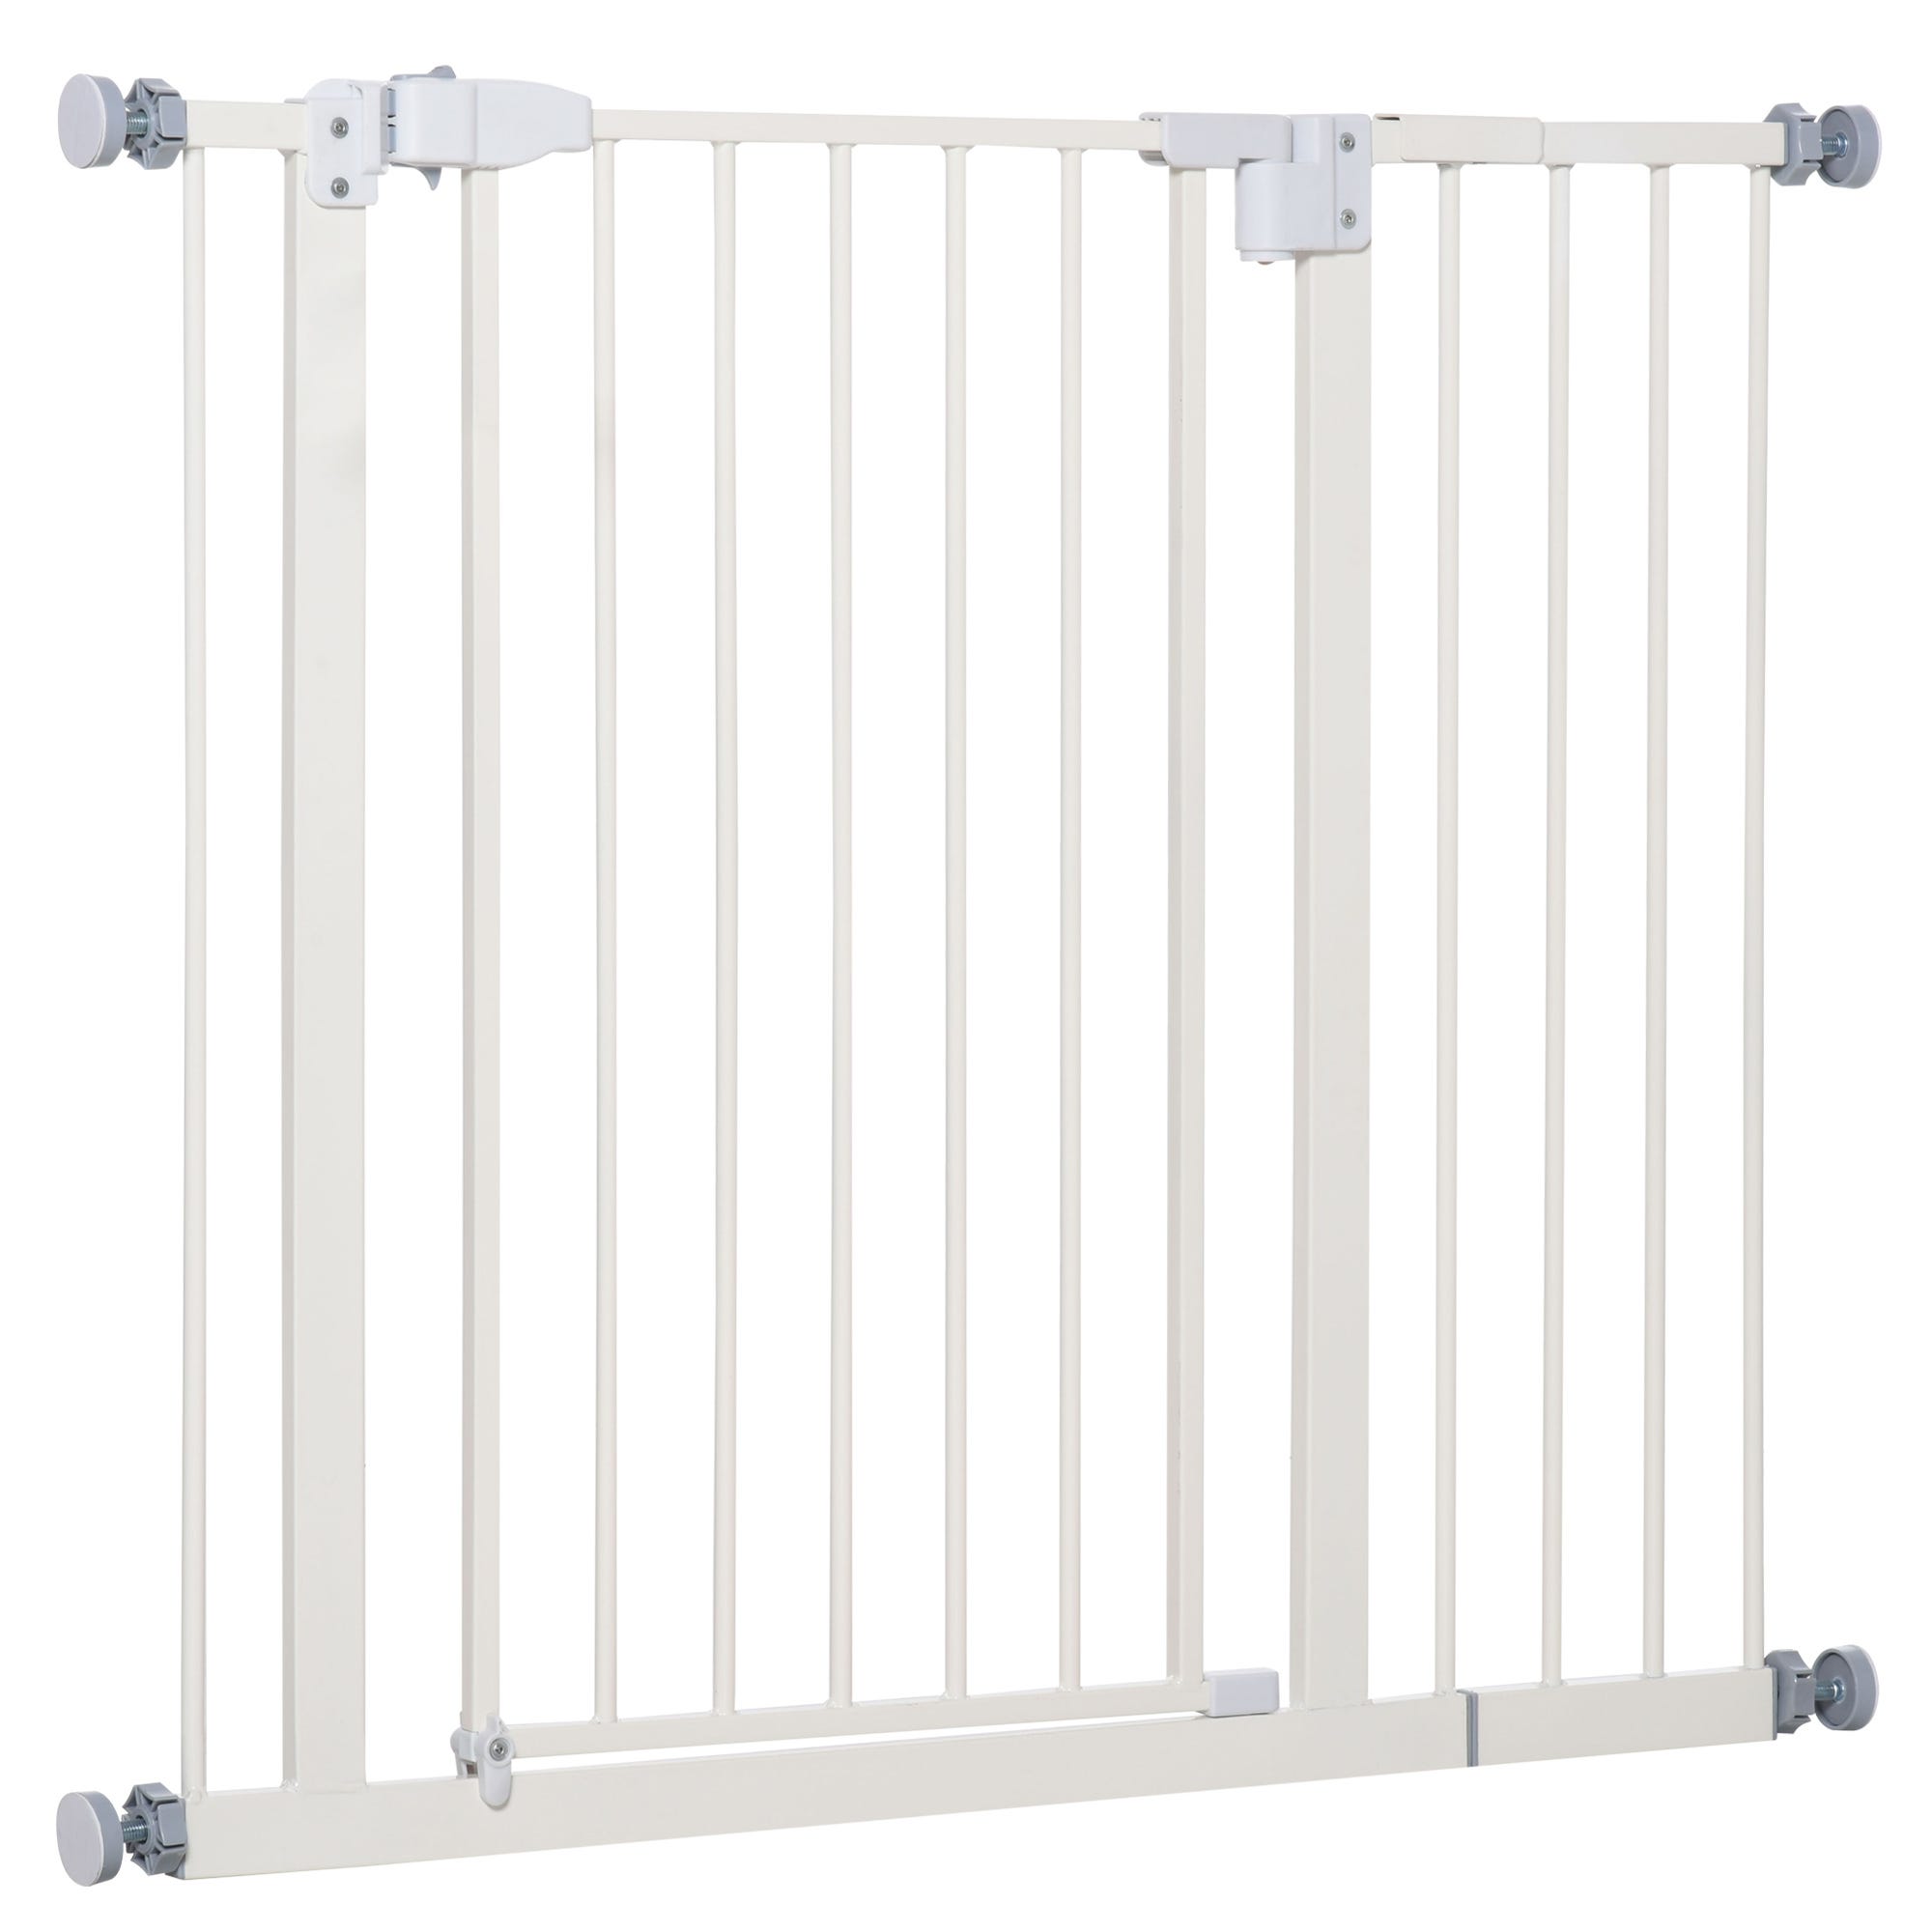 Barriere de Securite porte et escalier 88-96cm blanc pour animaux